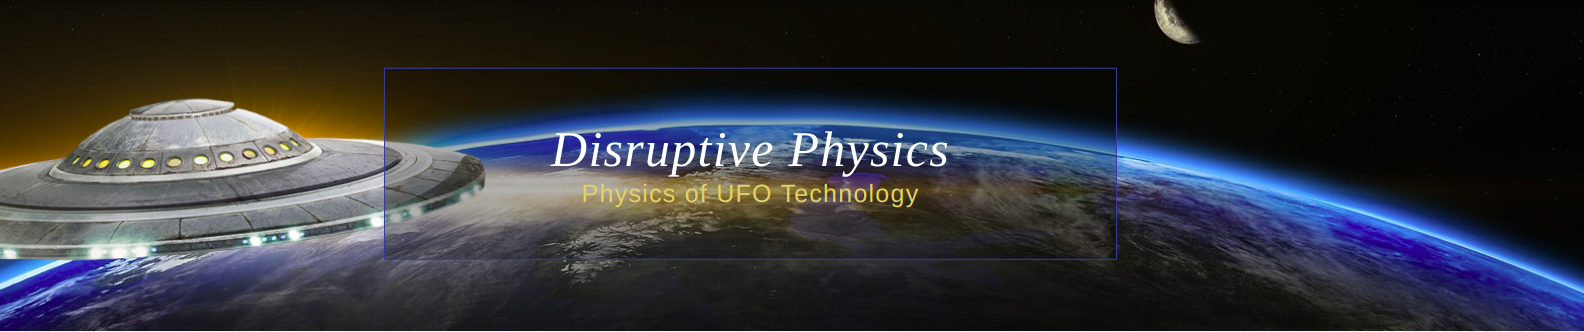 DisruptivePhysics